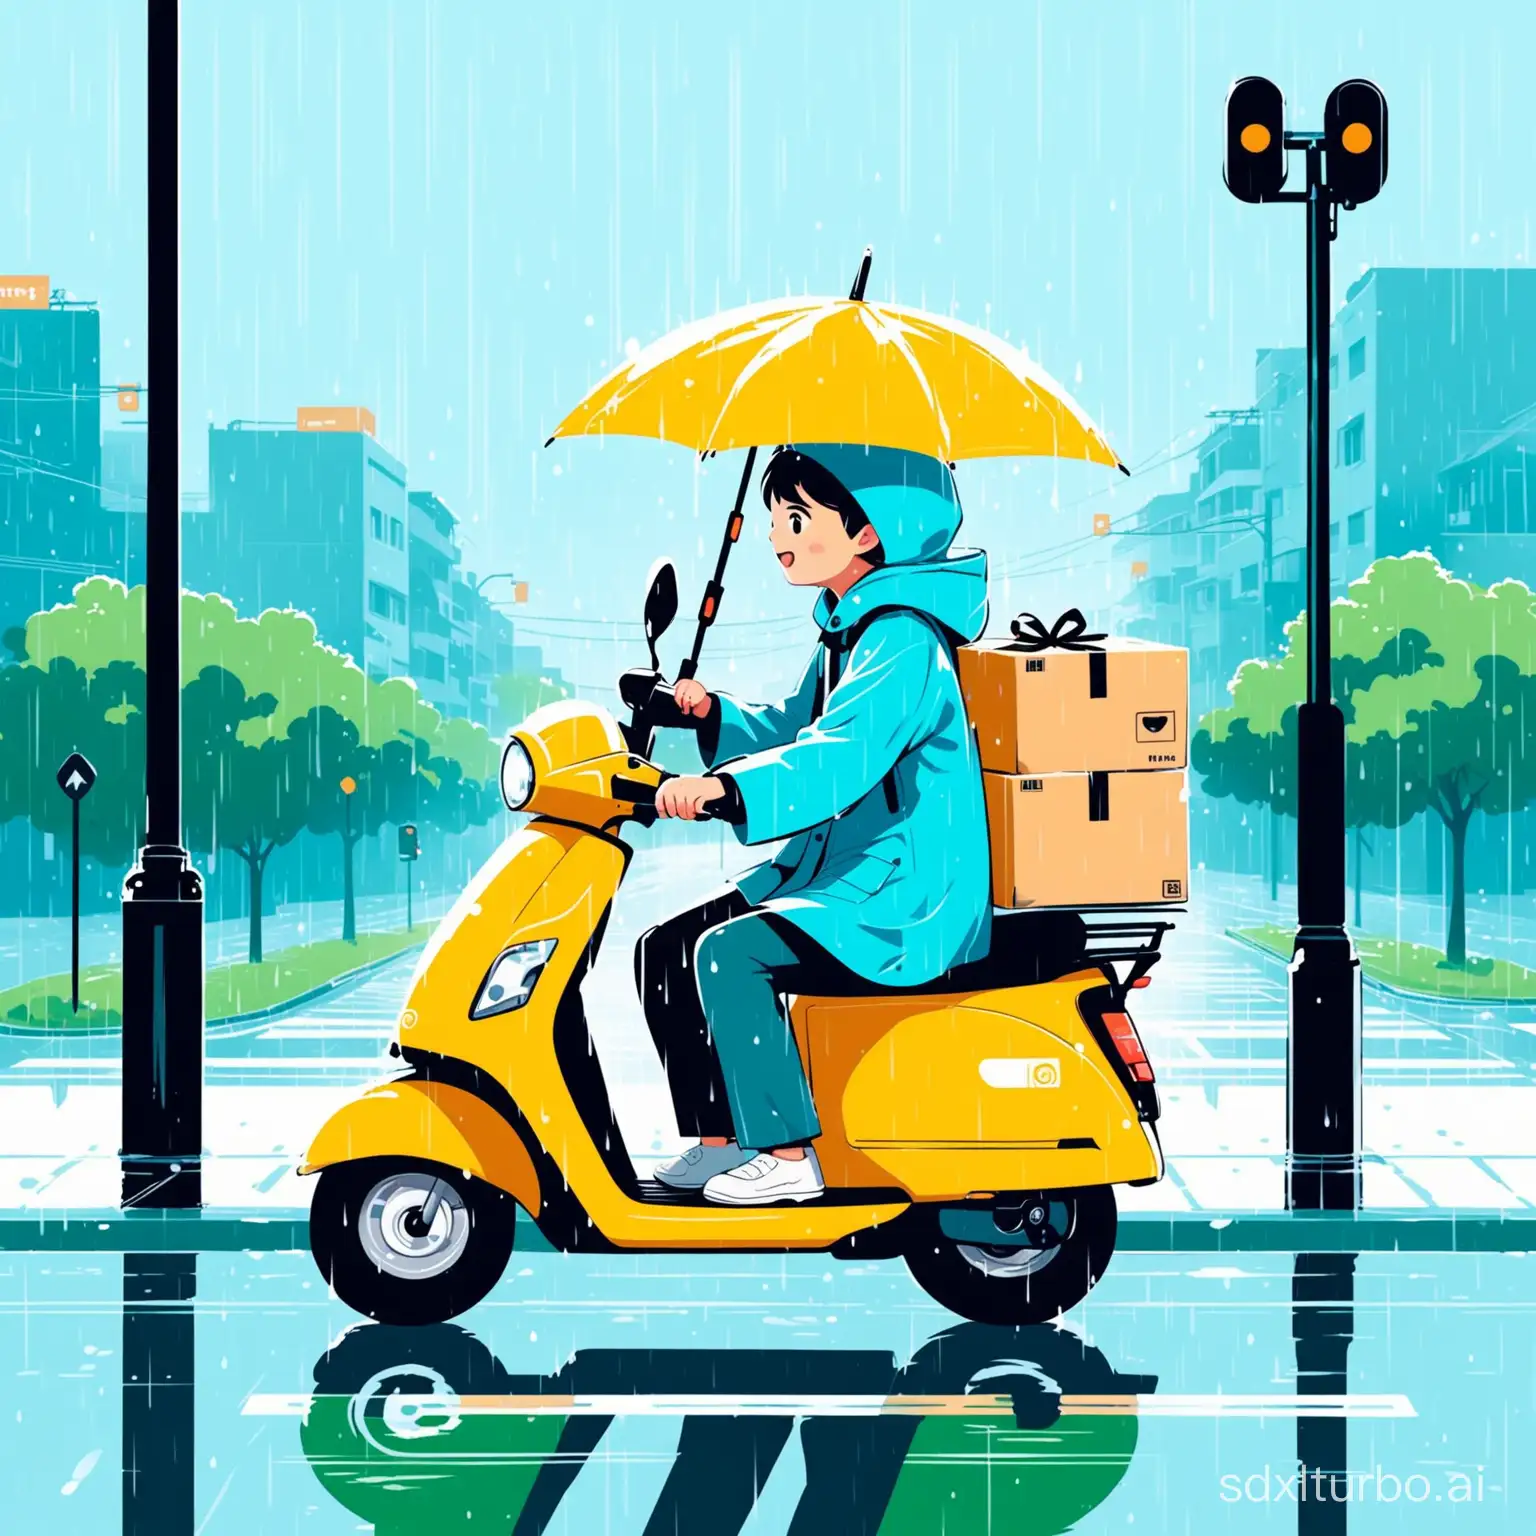 可爱平面插画风格，色彩亮丽柔和，下雨天的十字路口，一个外卖员骑着电瓶车穿过马路，电瓶车上载着一个穿着蓝色雨衣的小男孩